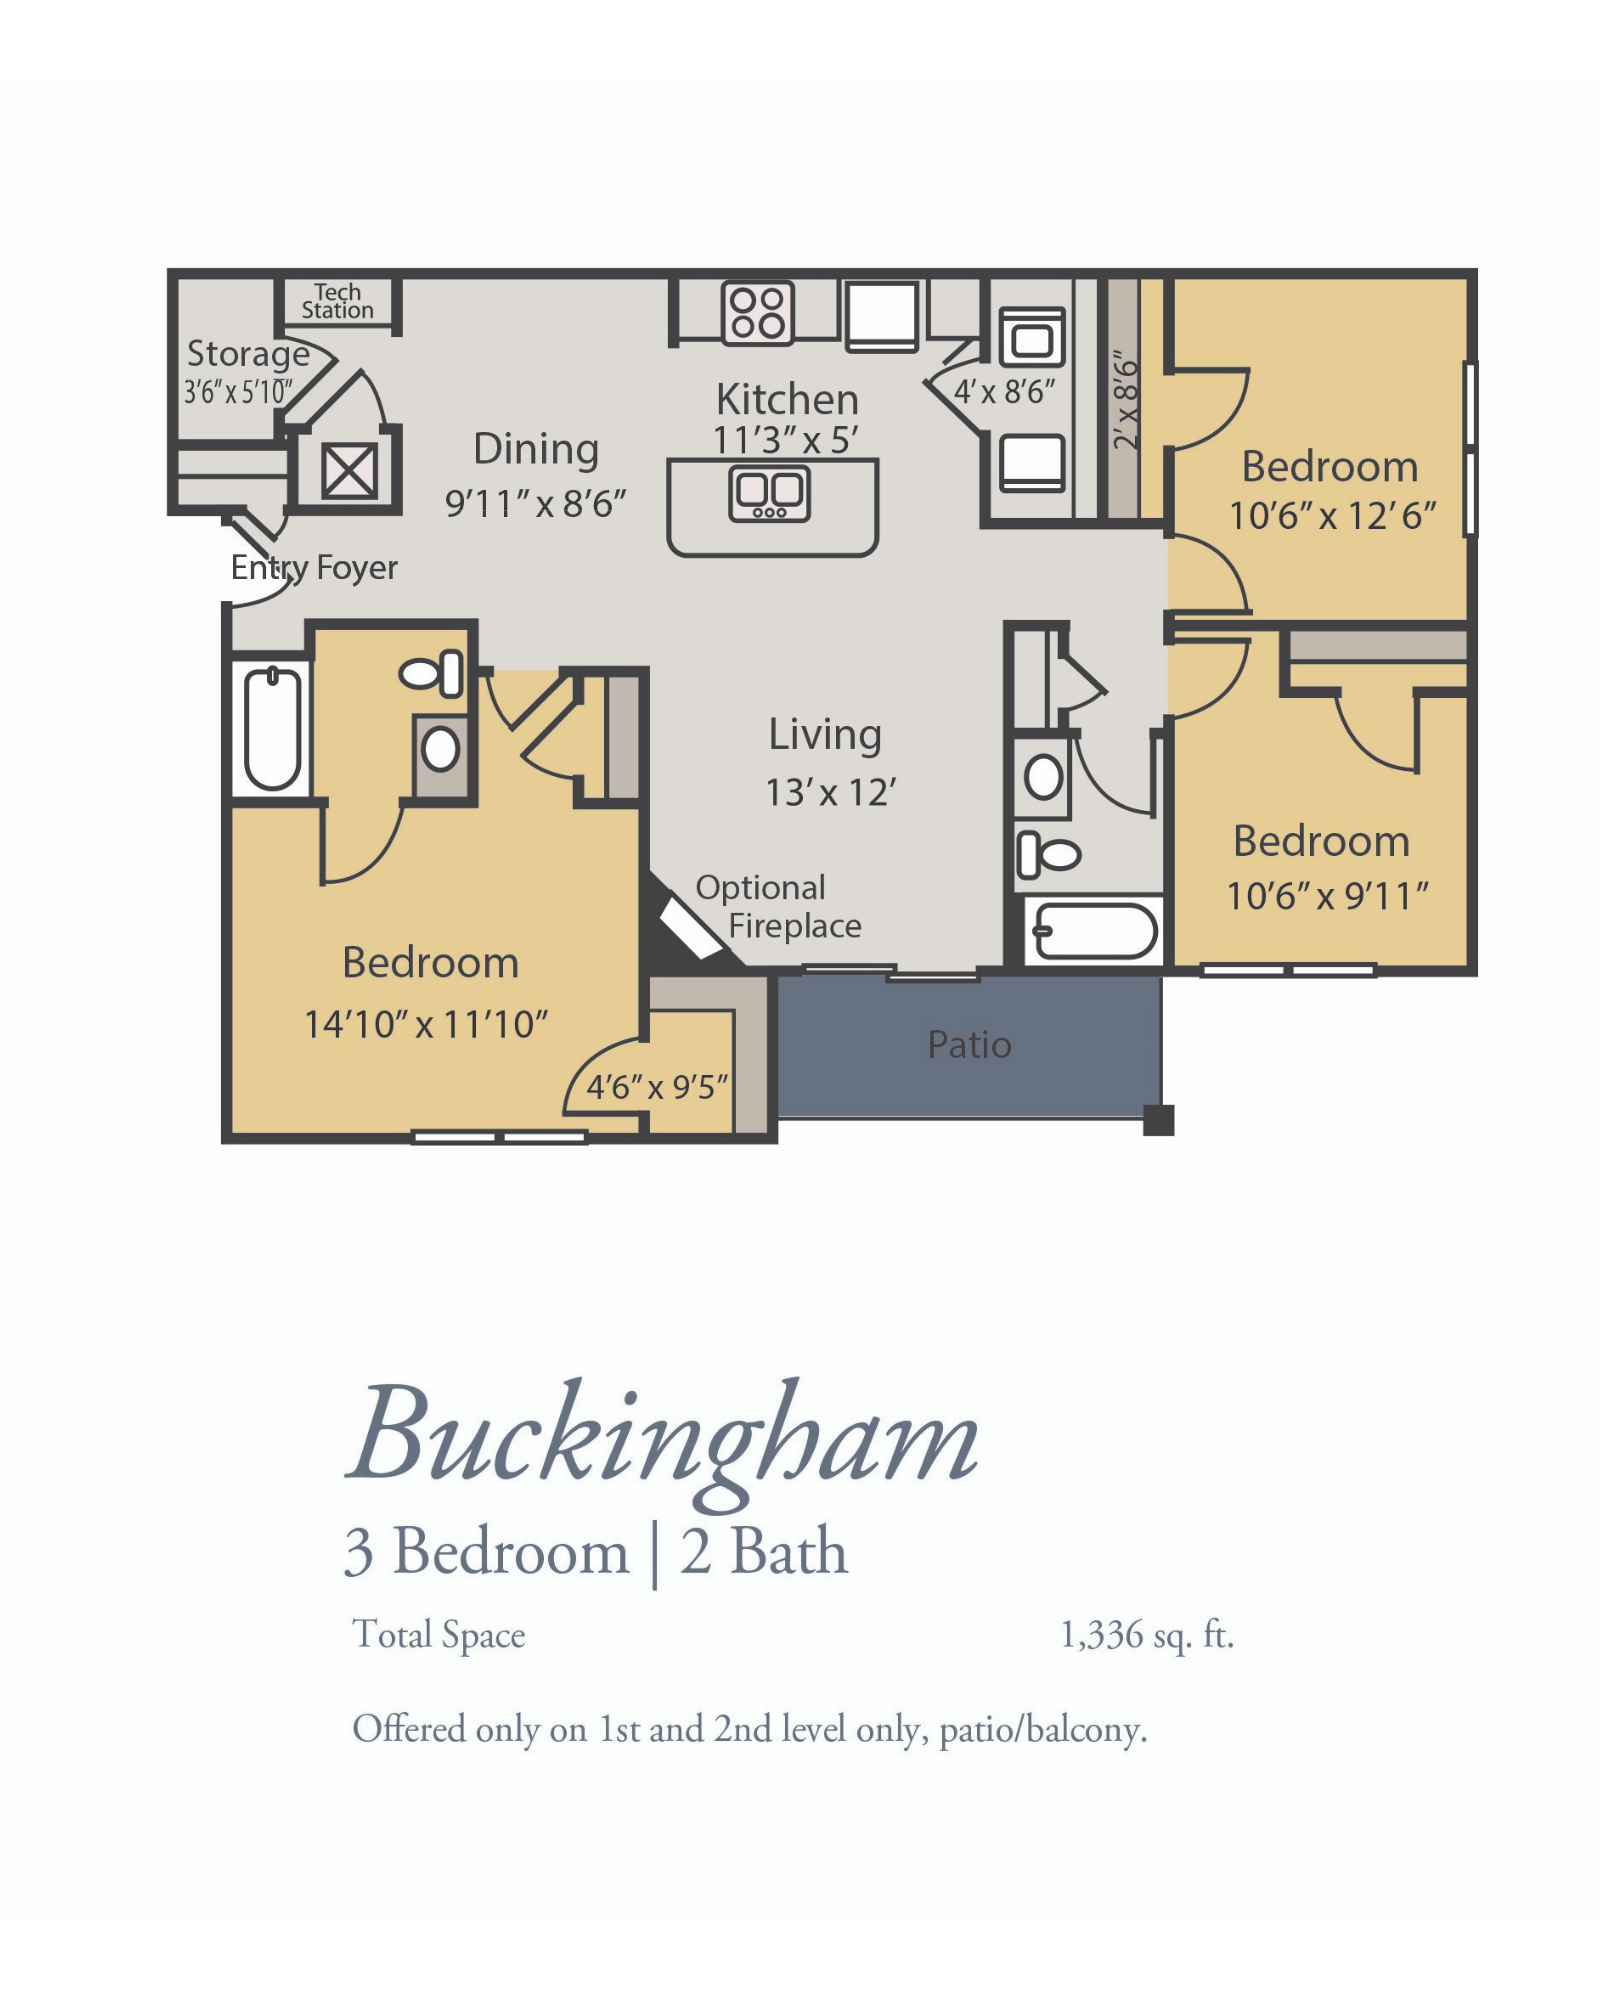 Buckingham Floor Plan, 3 Bedrooms, 2 Baths